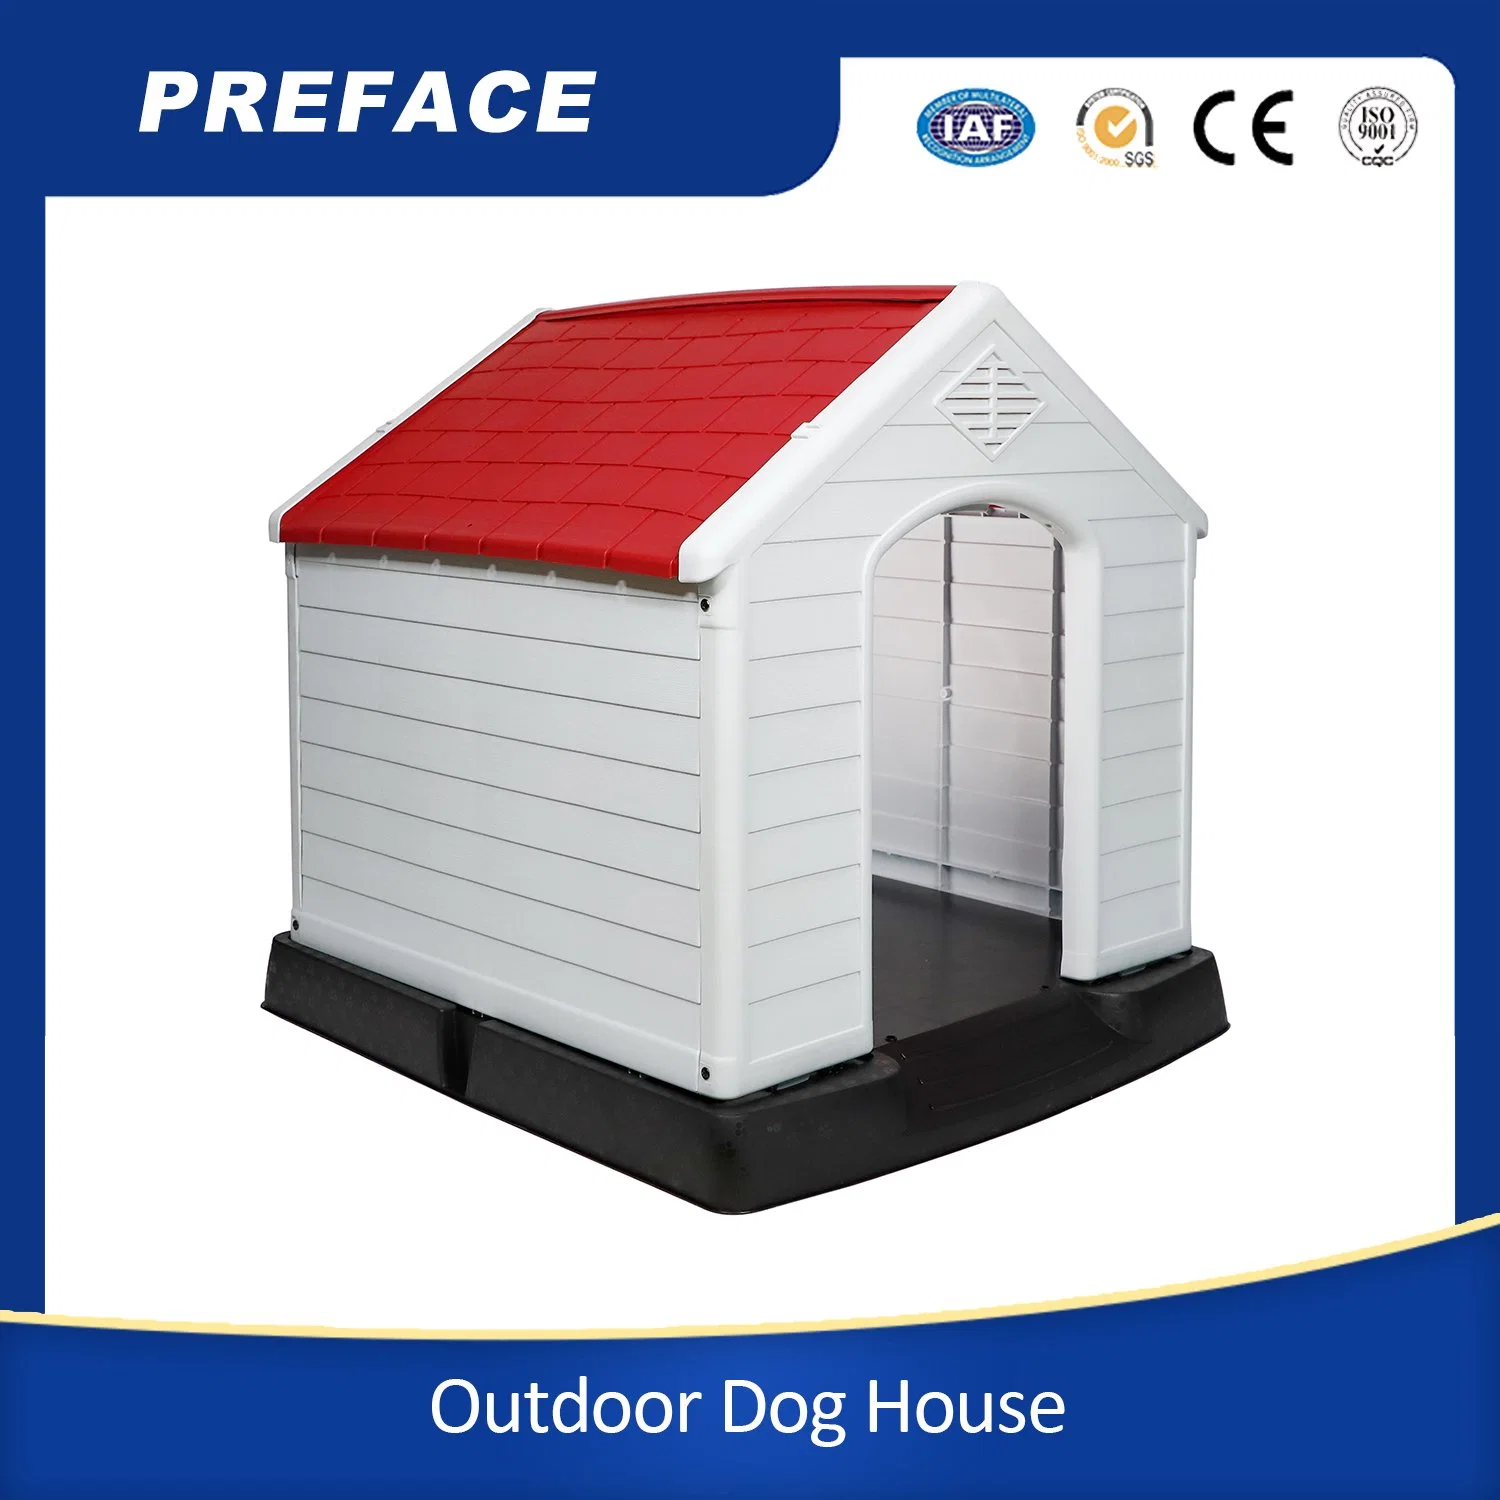 Wasserdichte und belüftete Hundezwinger für Hunde All Weather Dog House Outdoor-Kunststoff Haustier Hund Haus